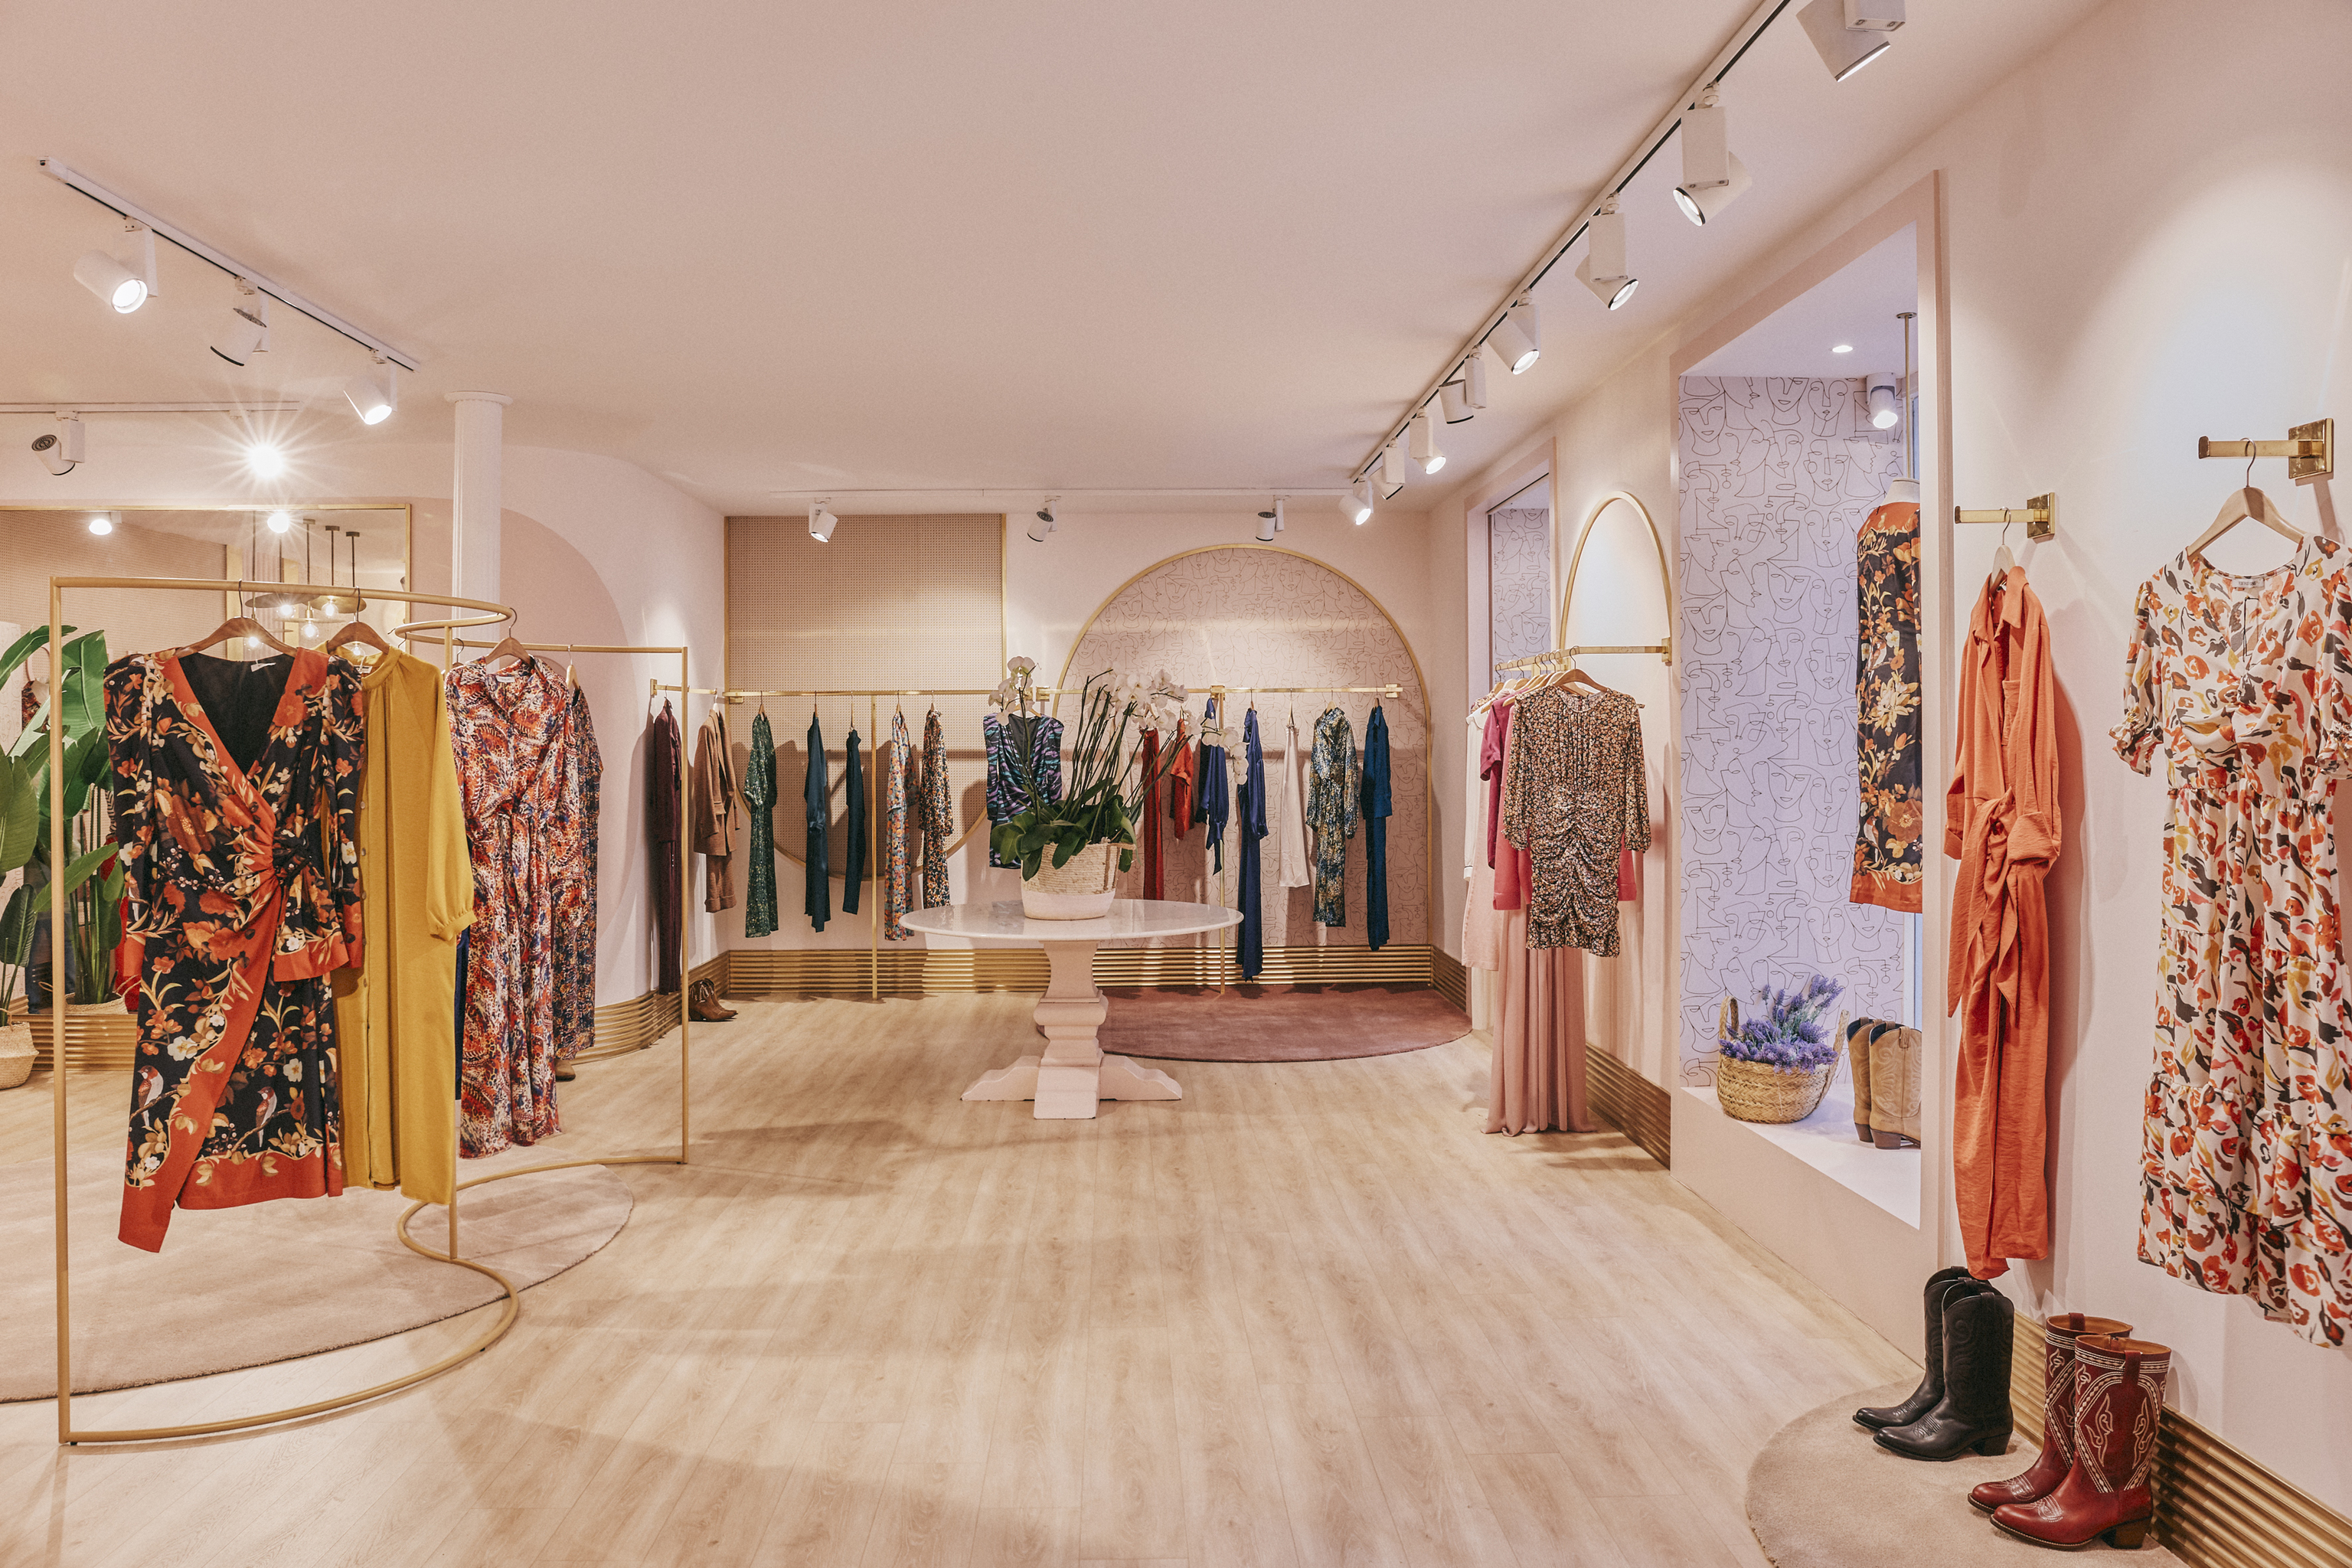 Partina City instinto Eficiente Las tiendas multimarca de lujo de Madrid donde compran las expertas en moda  | Moda